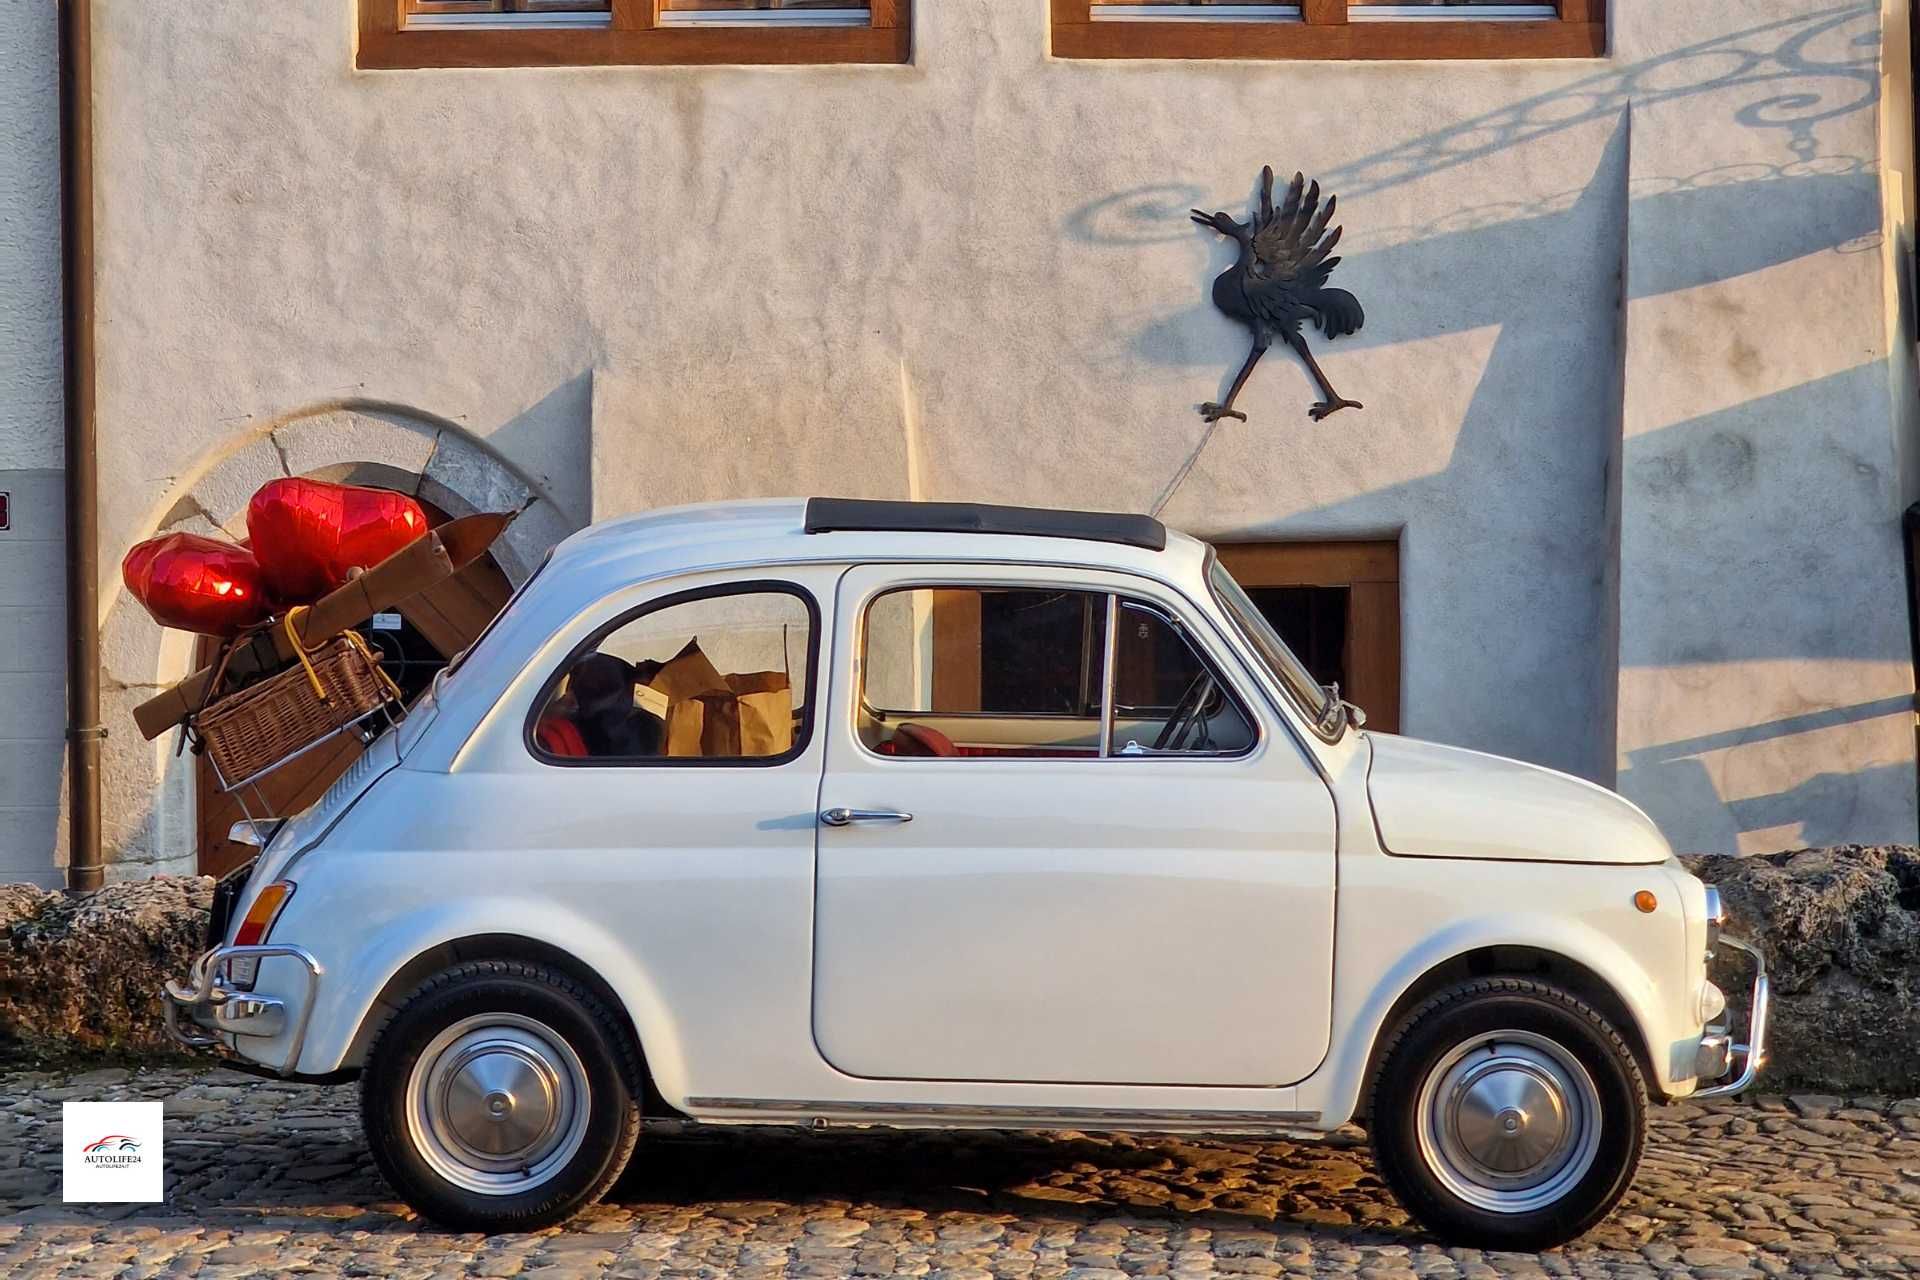 Fiat innovazione italiana - una 500 degli anni 70 bianca con cappotta